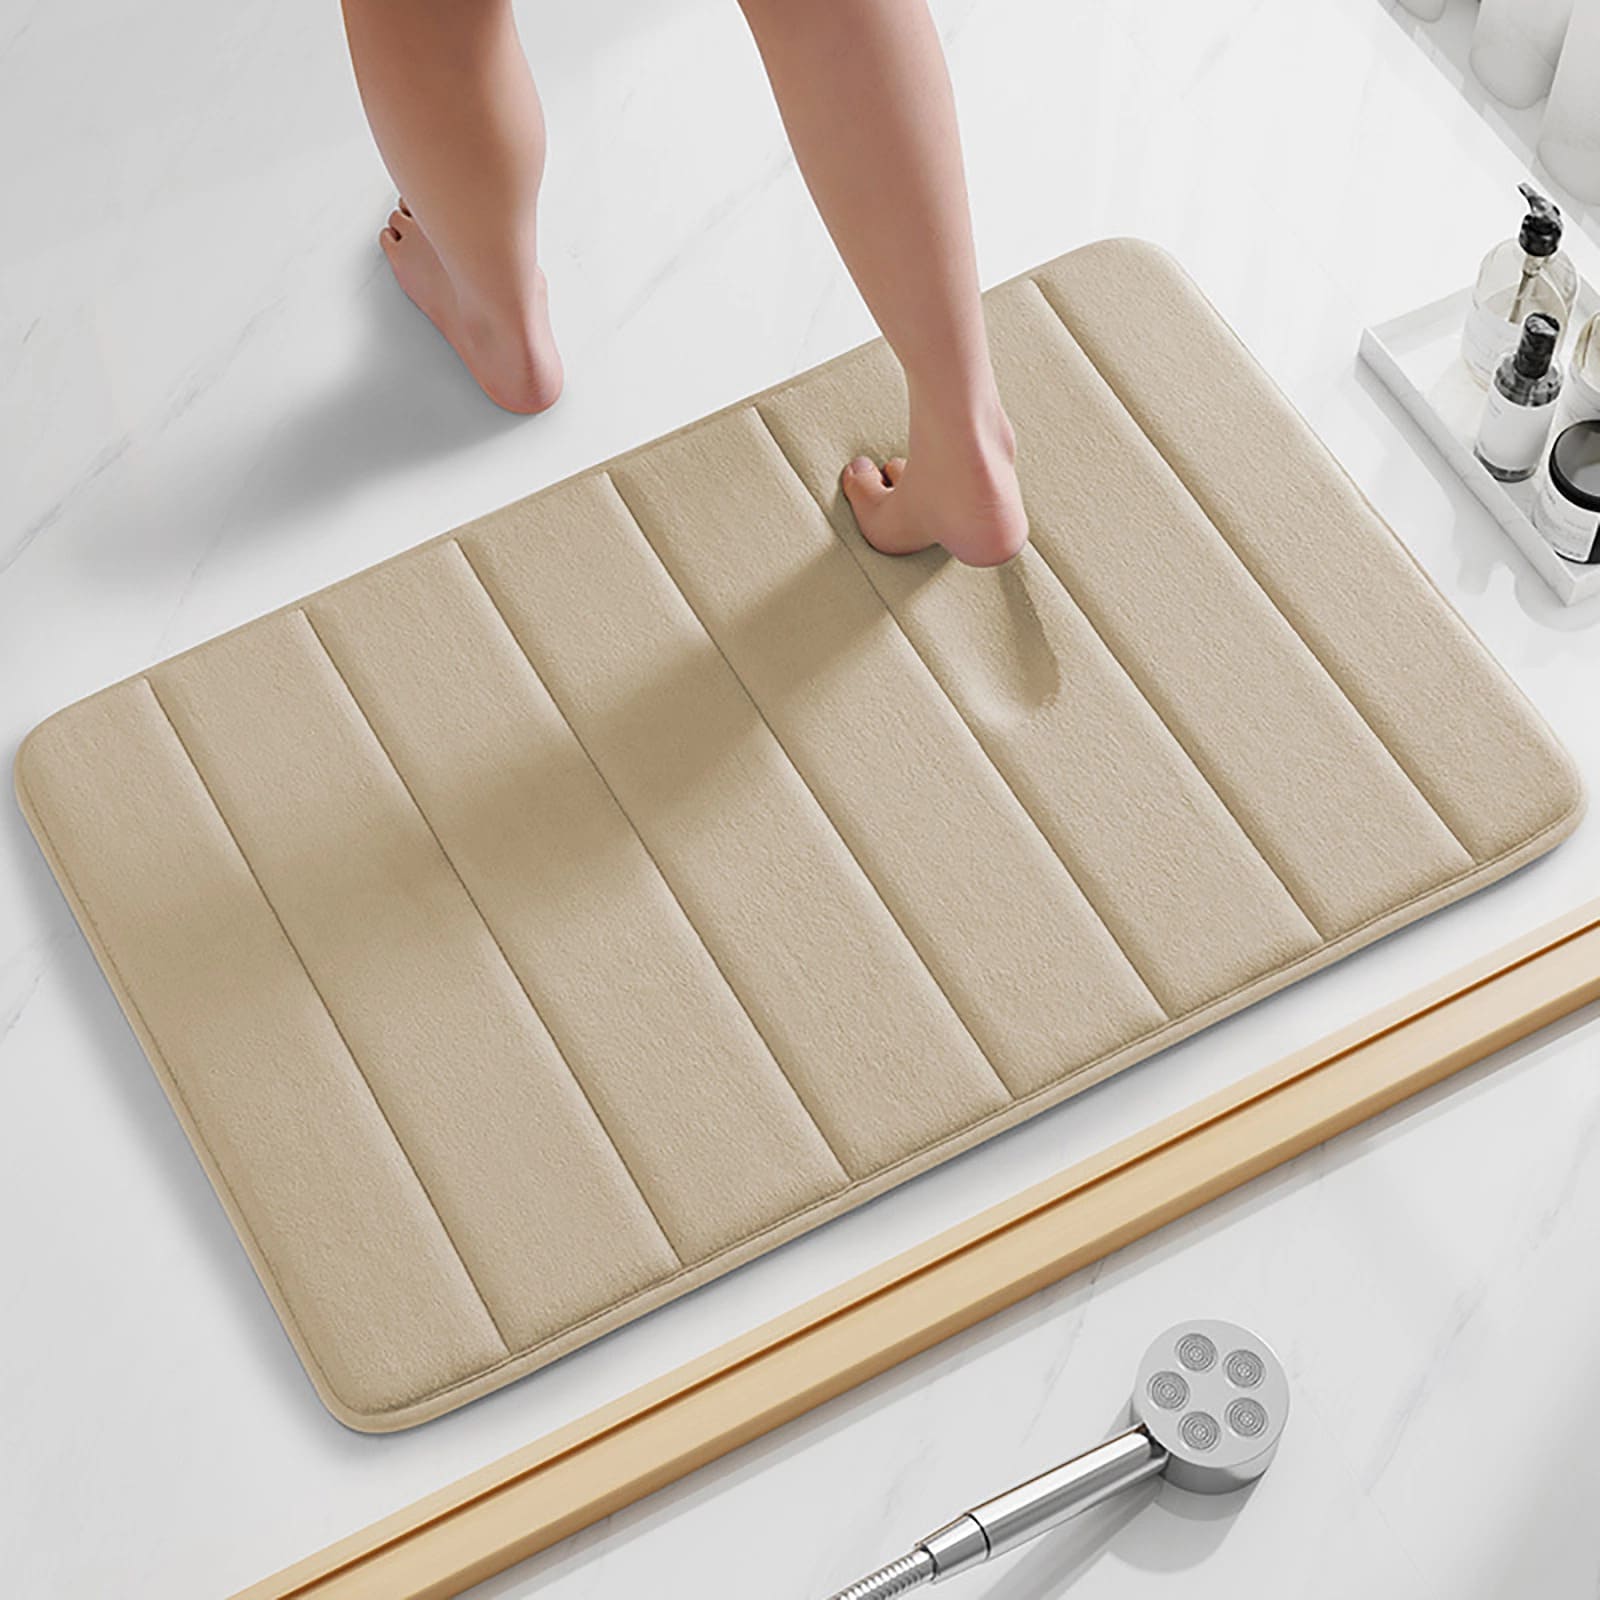 How To Clean A Non-Slip Bath Mat